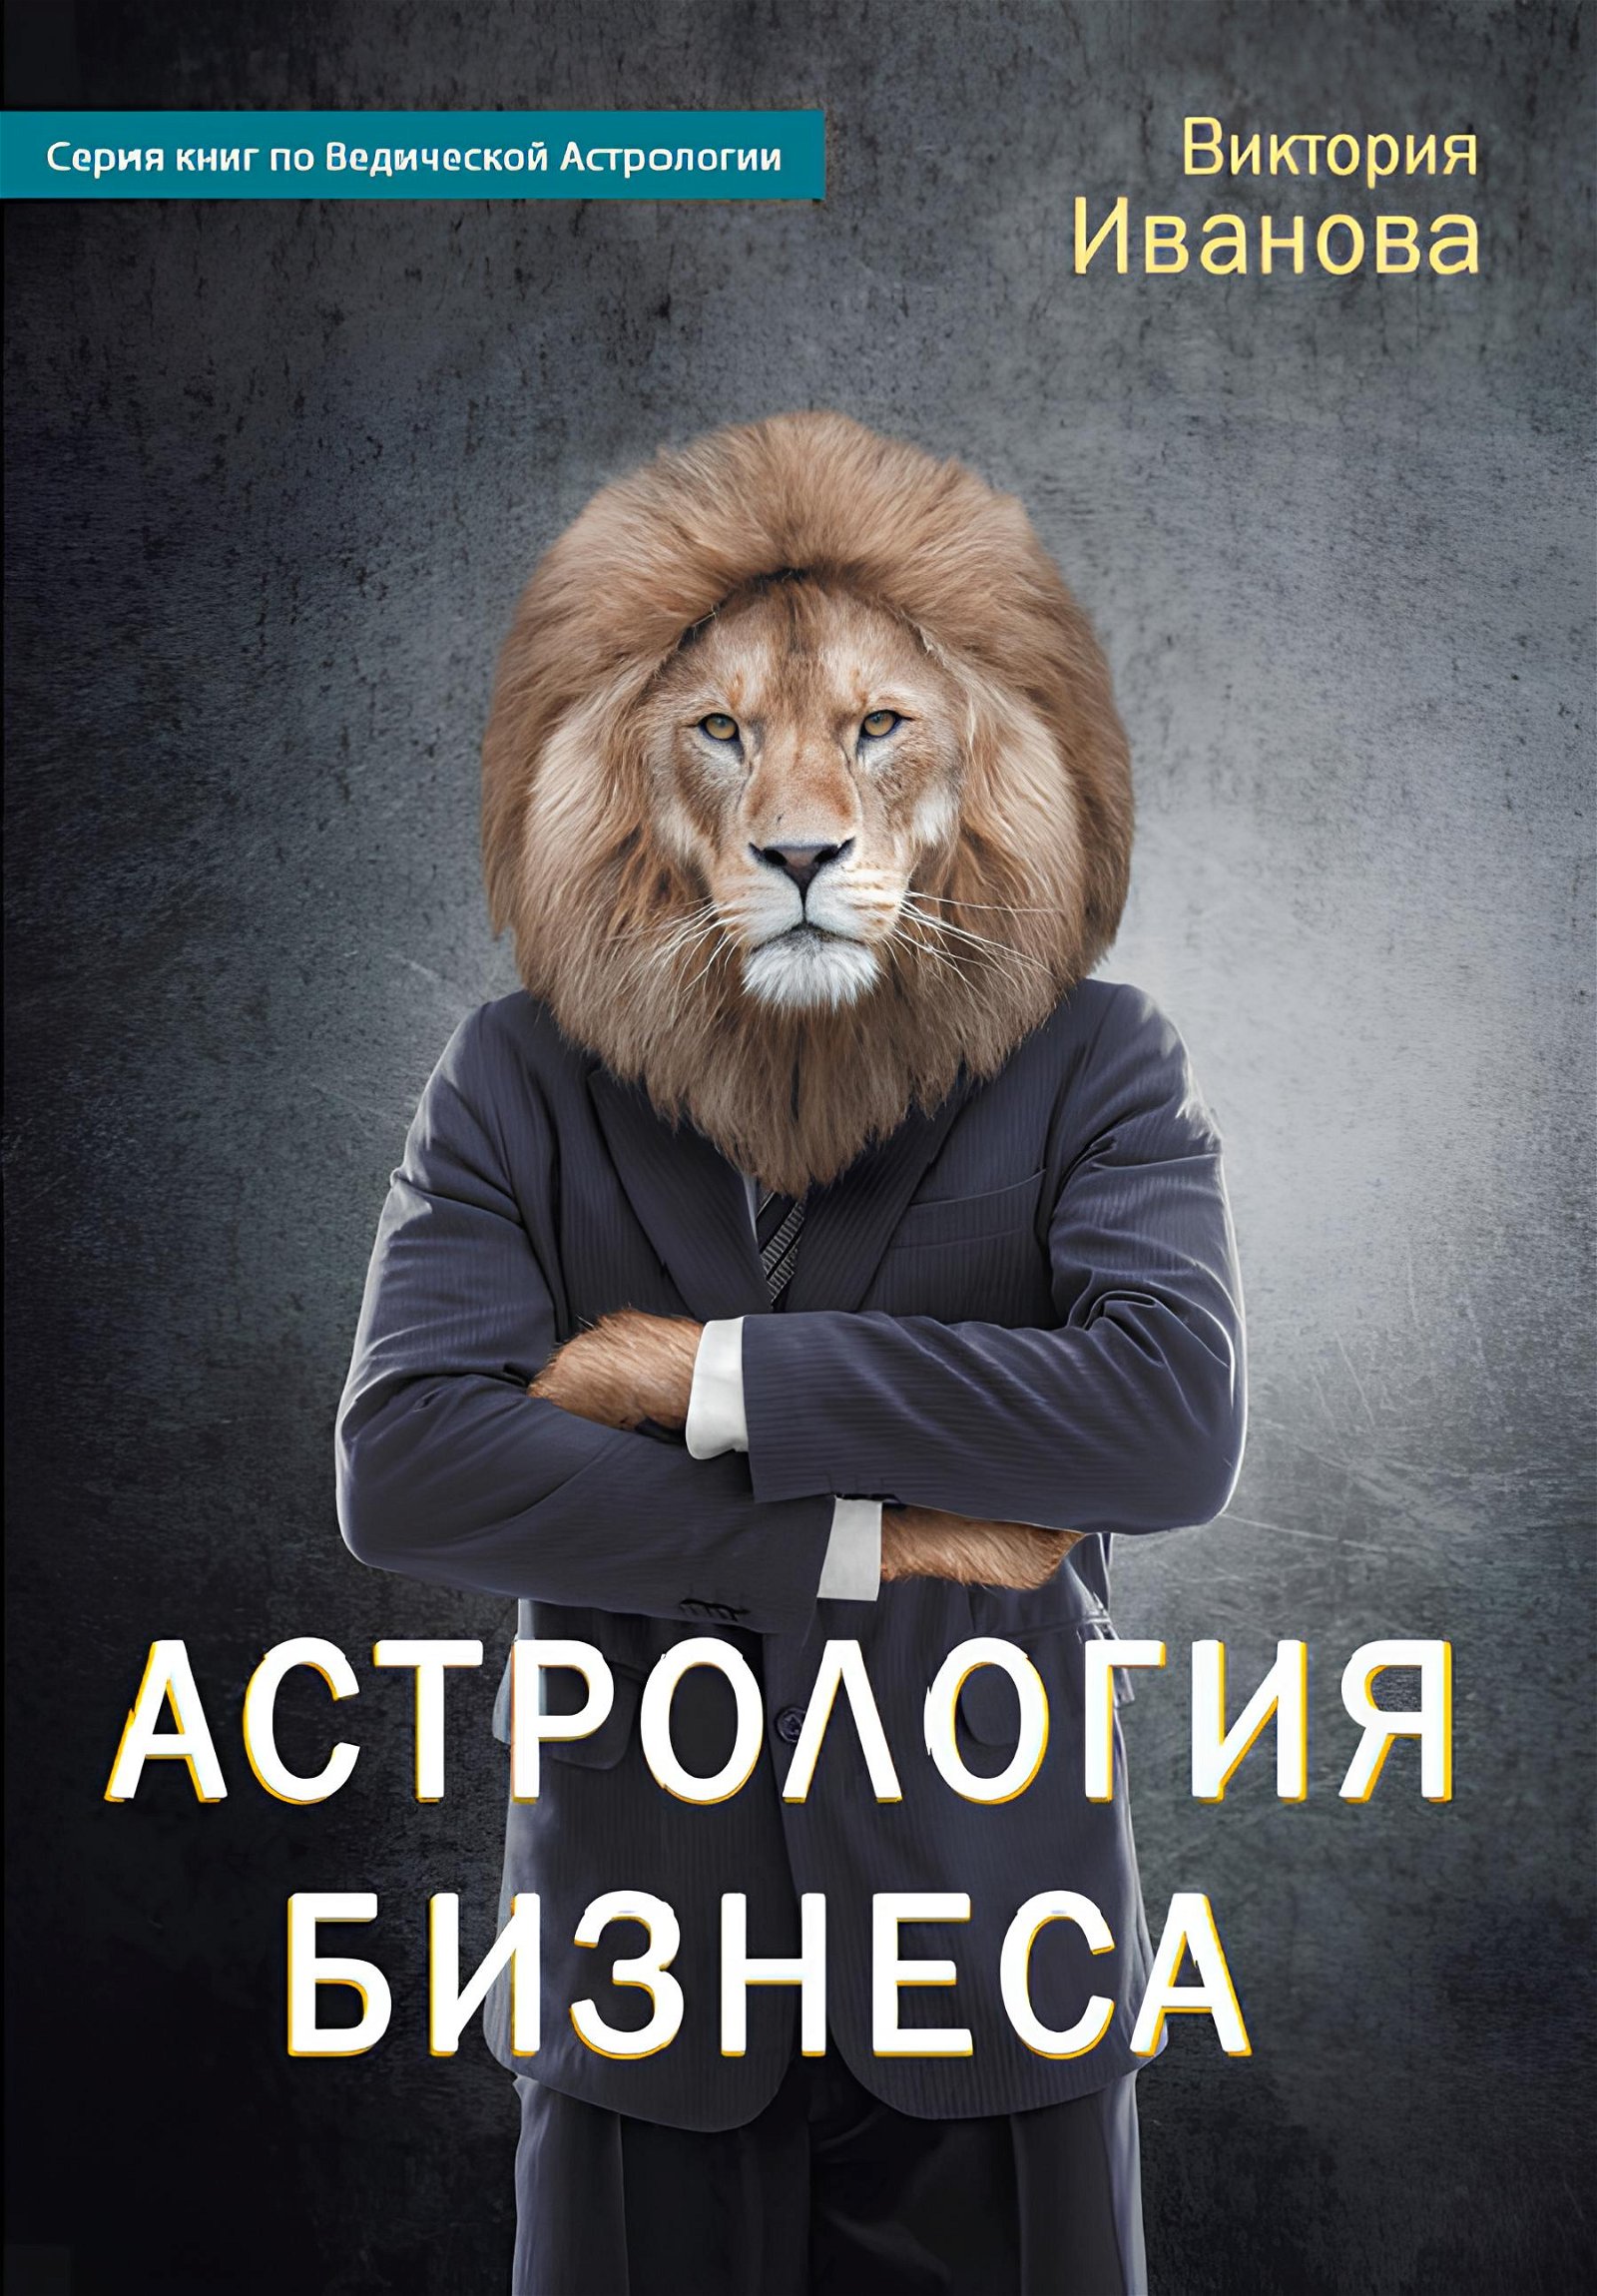 Купить книгу Астрология бизнеса Иванова В. А. в интернет-магазине Ариаварта